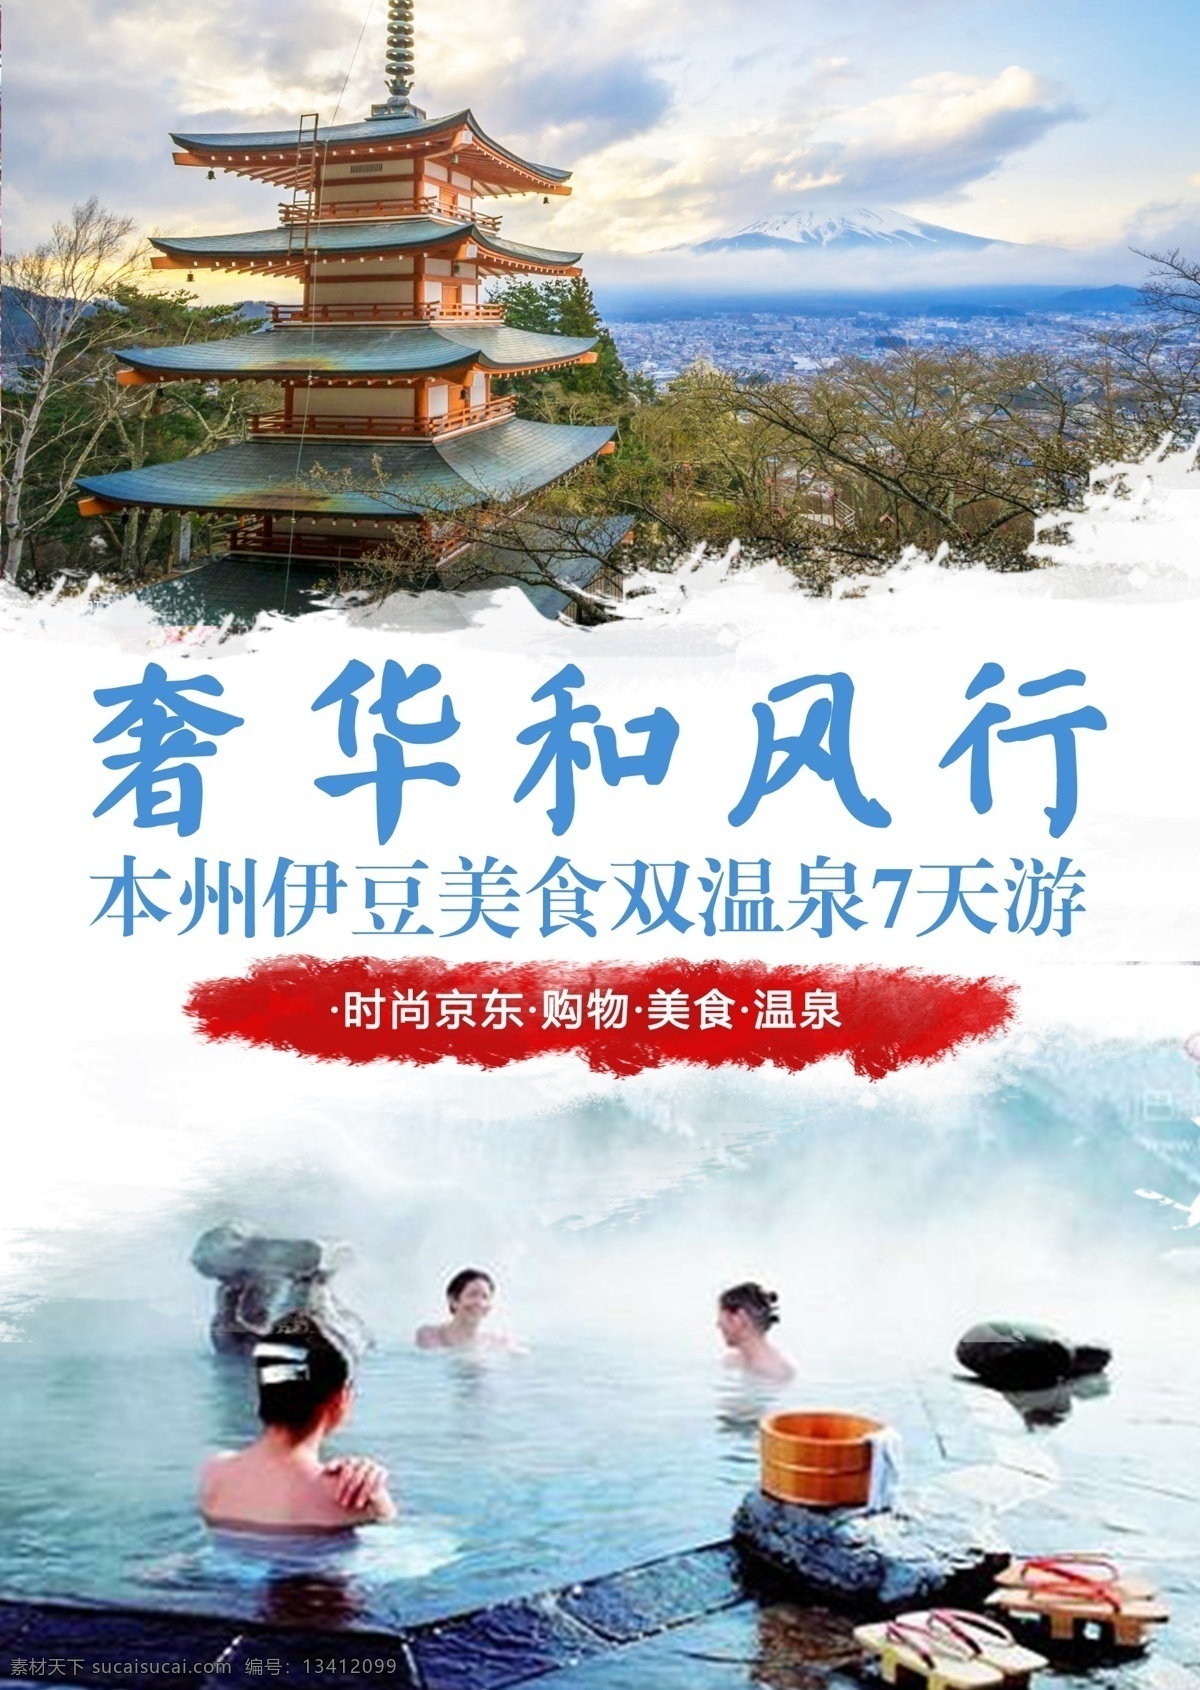 伊豆 美食 温泉 封面 日本 酒店 文化 创意 宣传